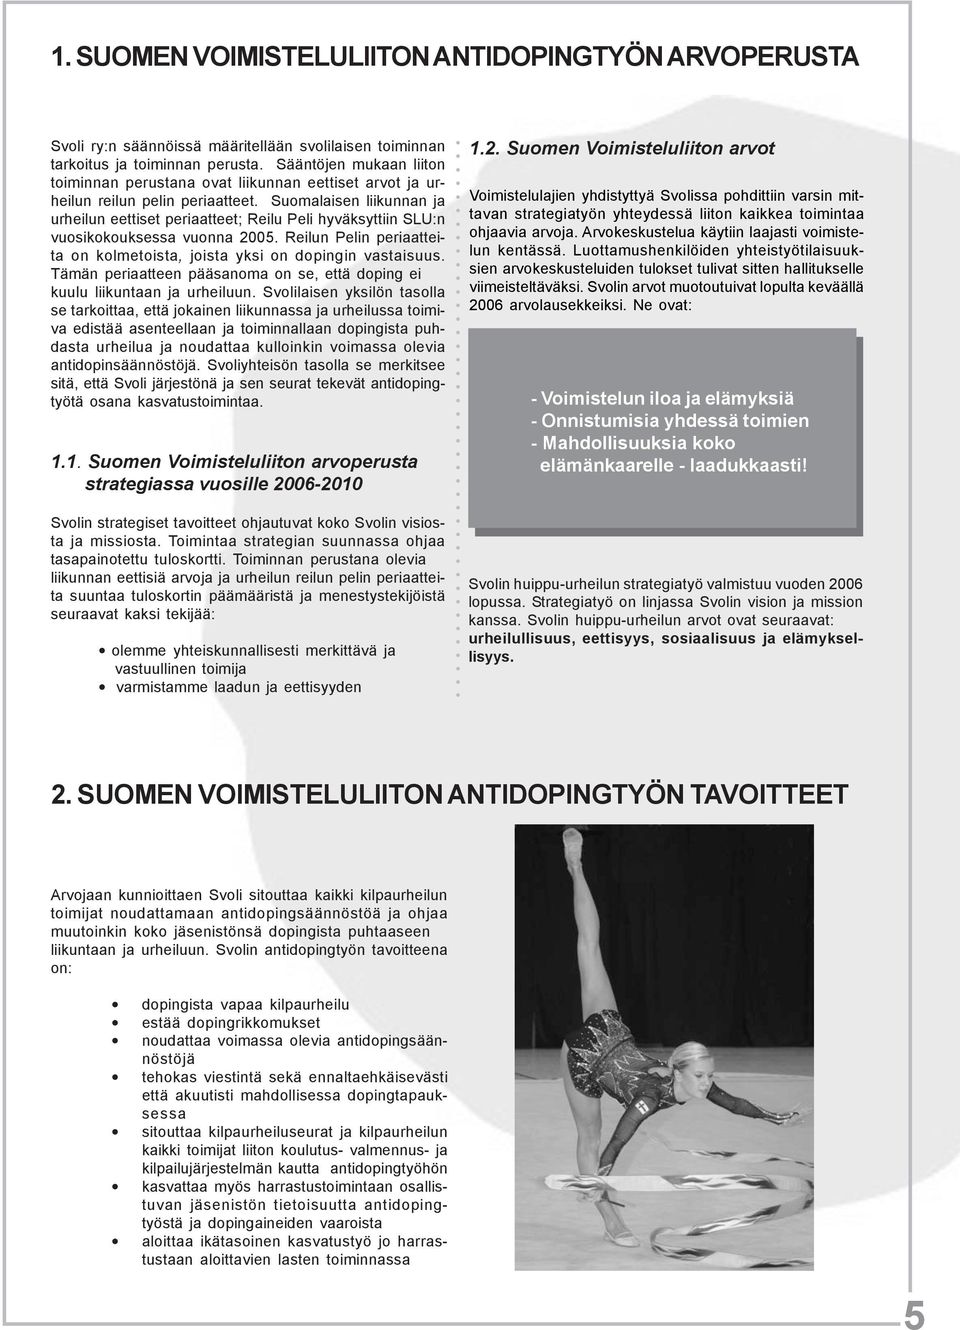 Suomalaisen liikunnan ja urheilun eettiset periaatteet; Reilu Peli hyväksyttiin SLU:n vuosikokouksessa vuonna 2005. Reilun Pelin periaatteita on kolmetoista, joista yksi on dopingin vastaisuus.